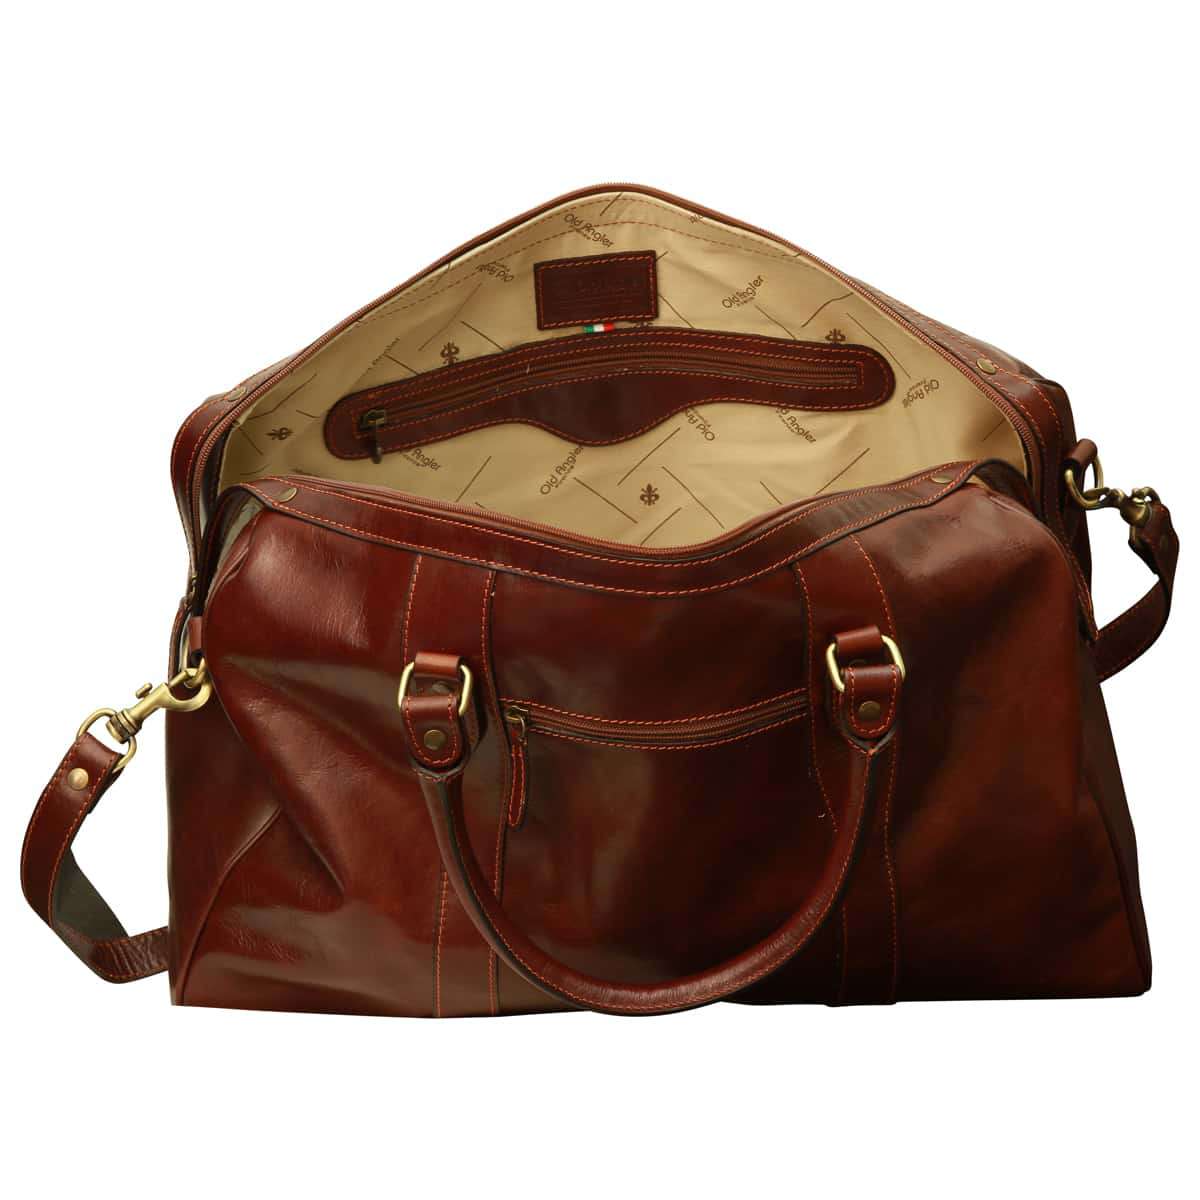 Travel Bag with shoulder strap - Brown | 108805MA US | Old Angler Firenze